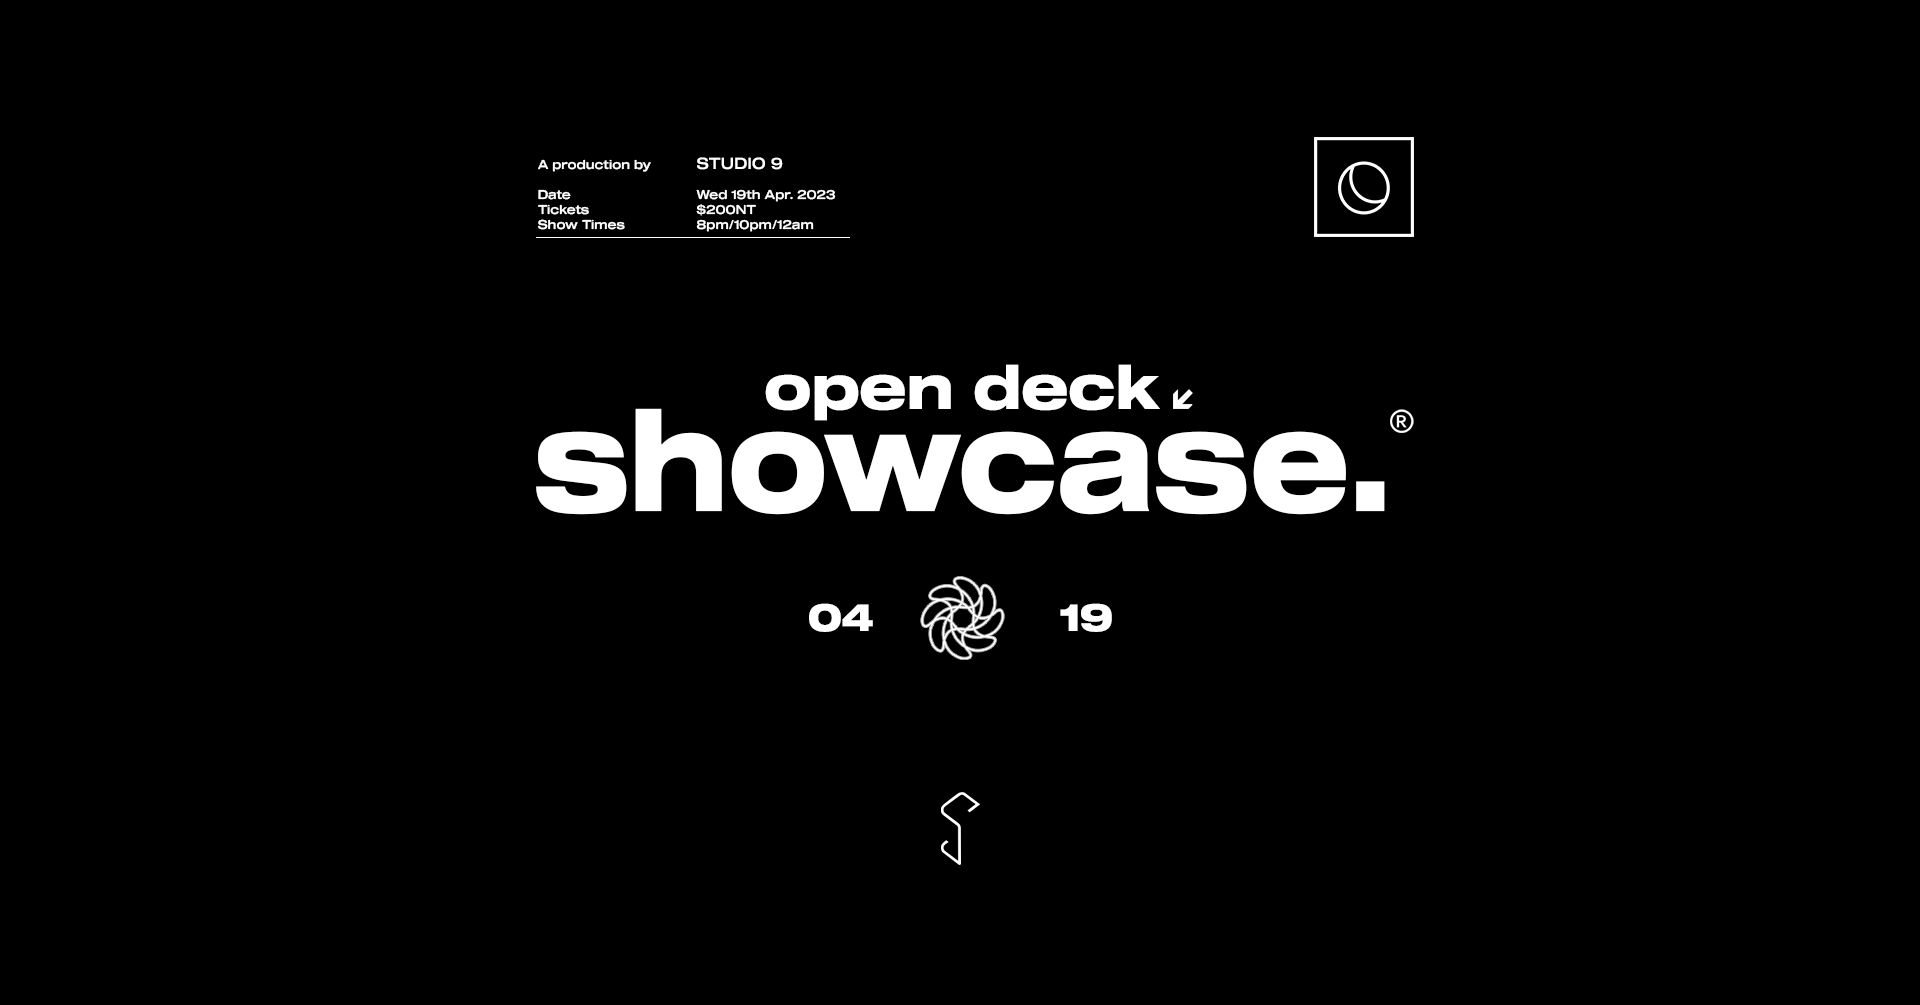 open deck showcase - フライヤー表